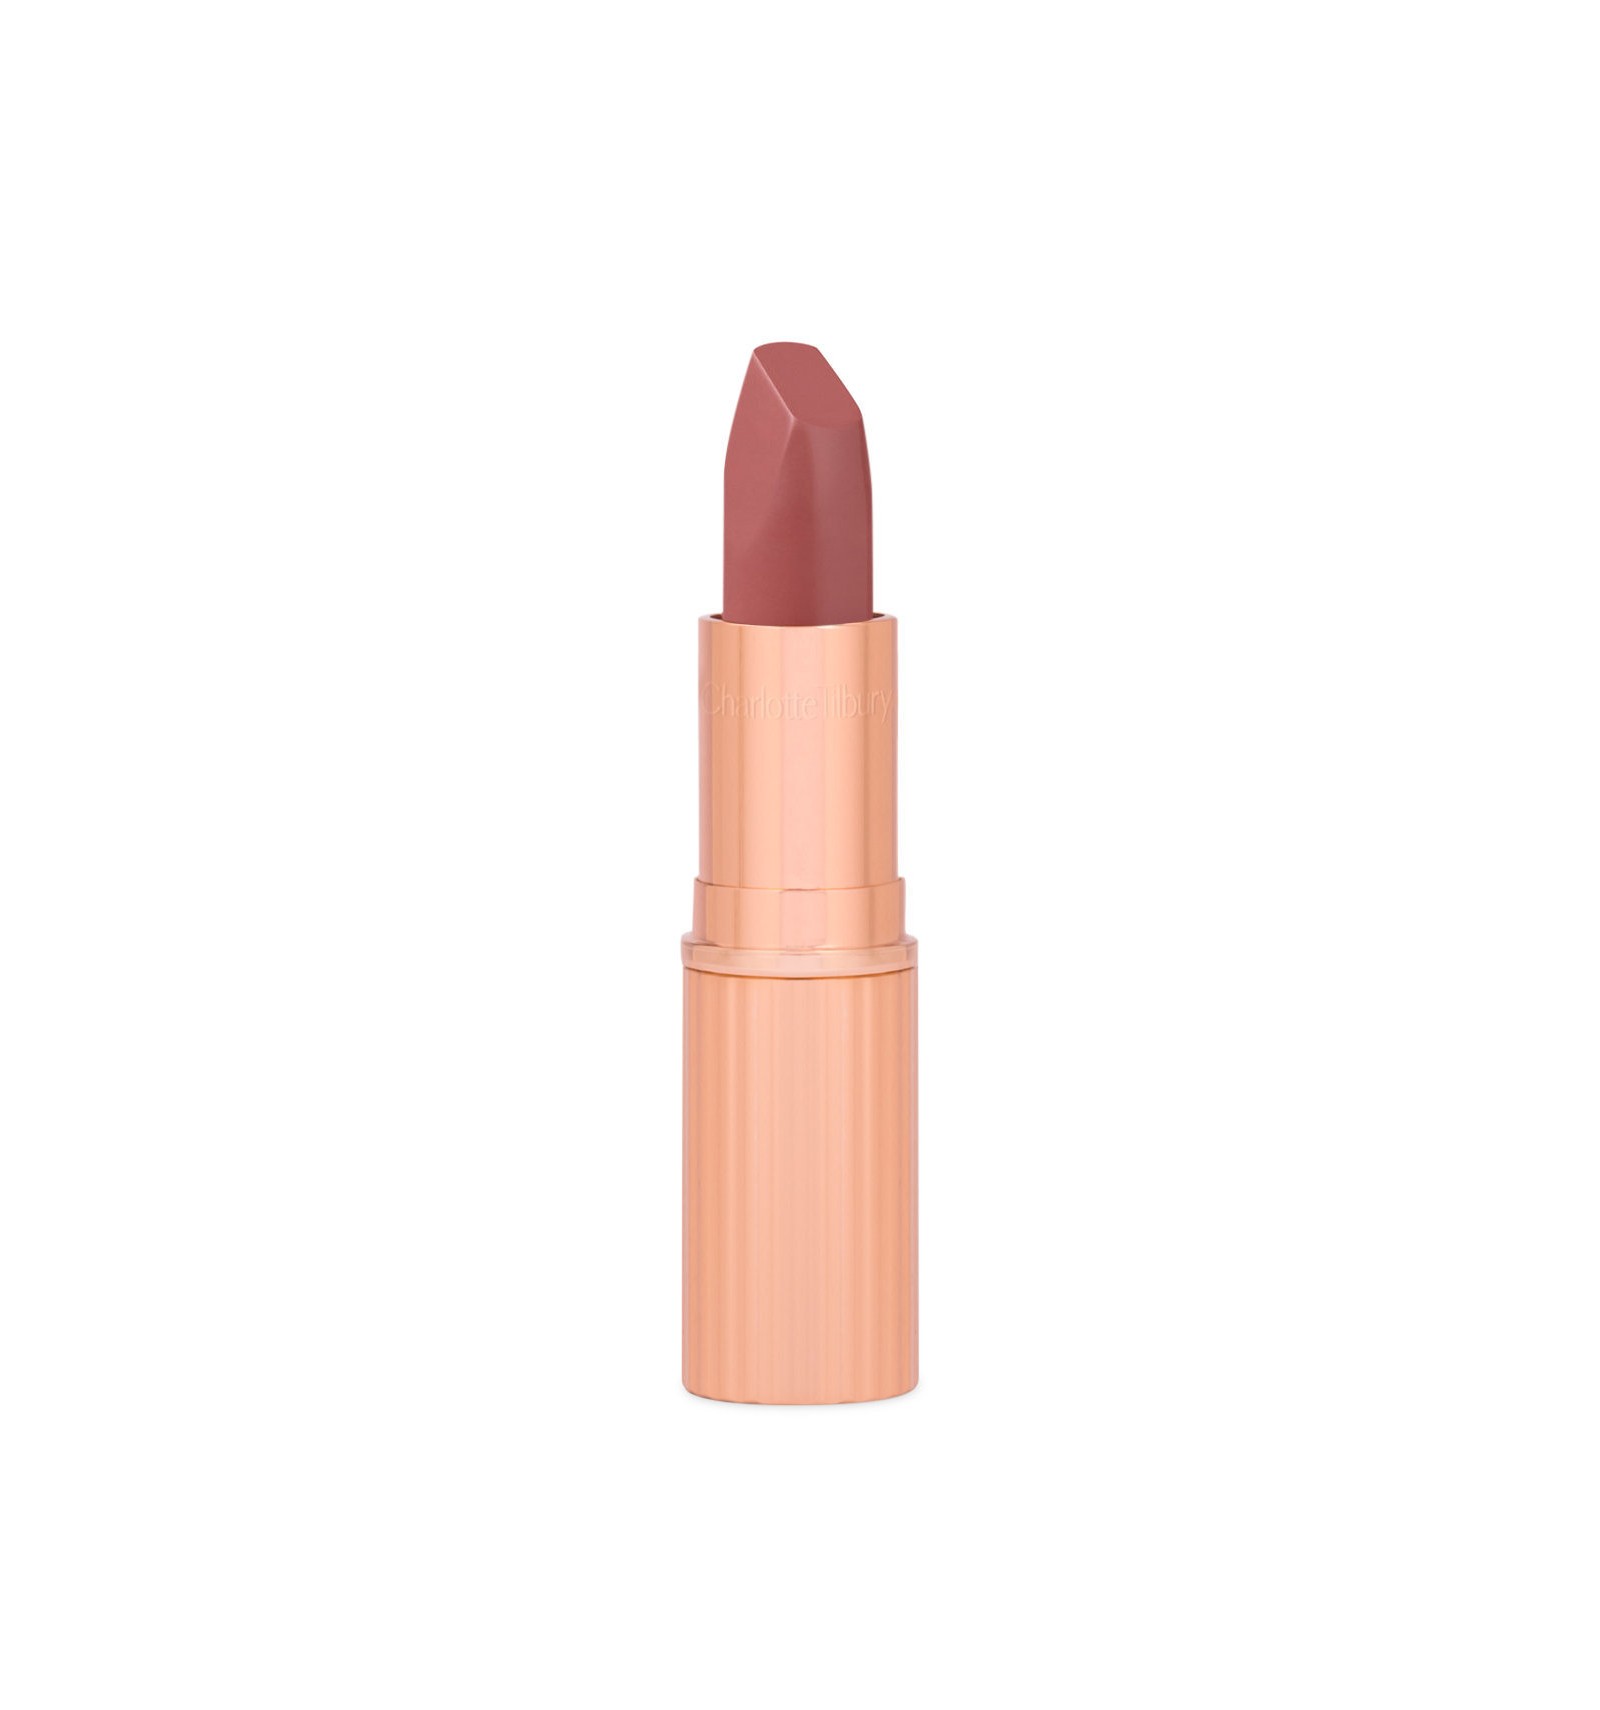 Pillow Talk Medium) Matte Revolution Lipstick - The Beauty Box México